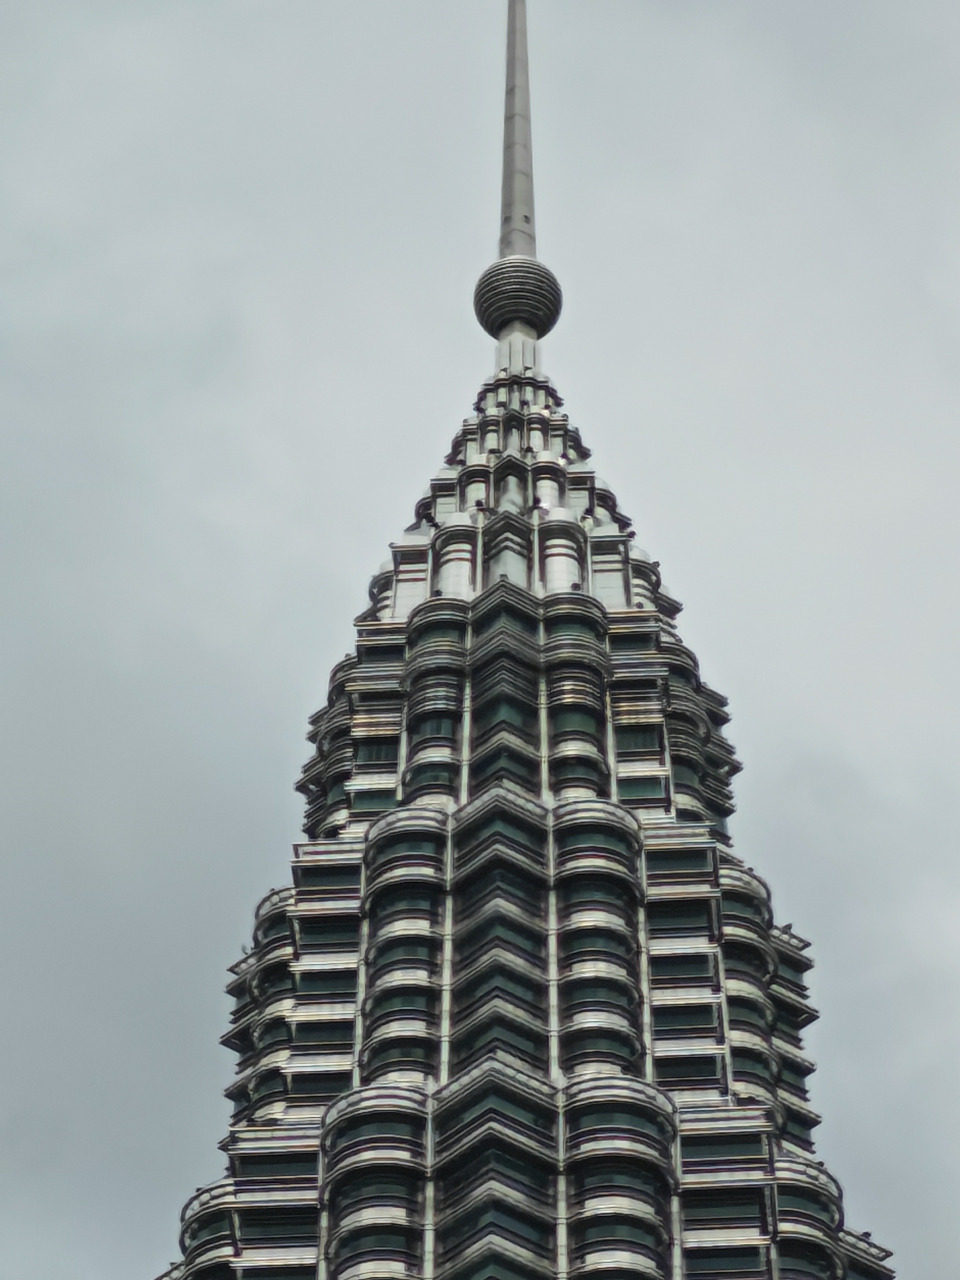 ■用40倍光学变焦效果的照片，可见吉隆坡双塔楼楼层细节仍非常清晰。